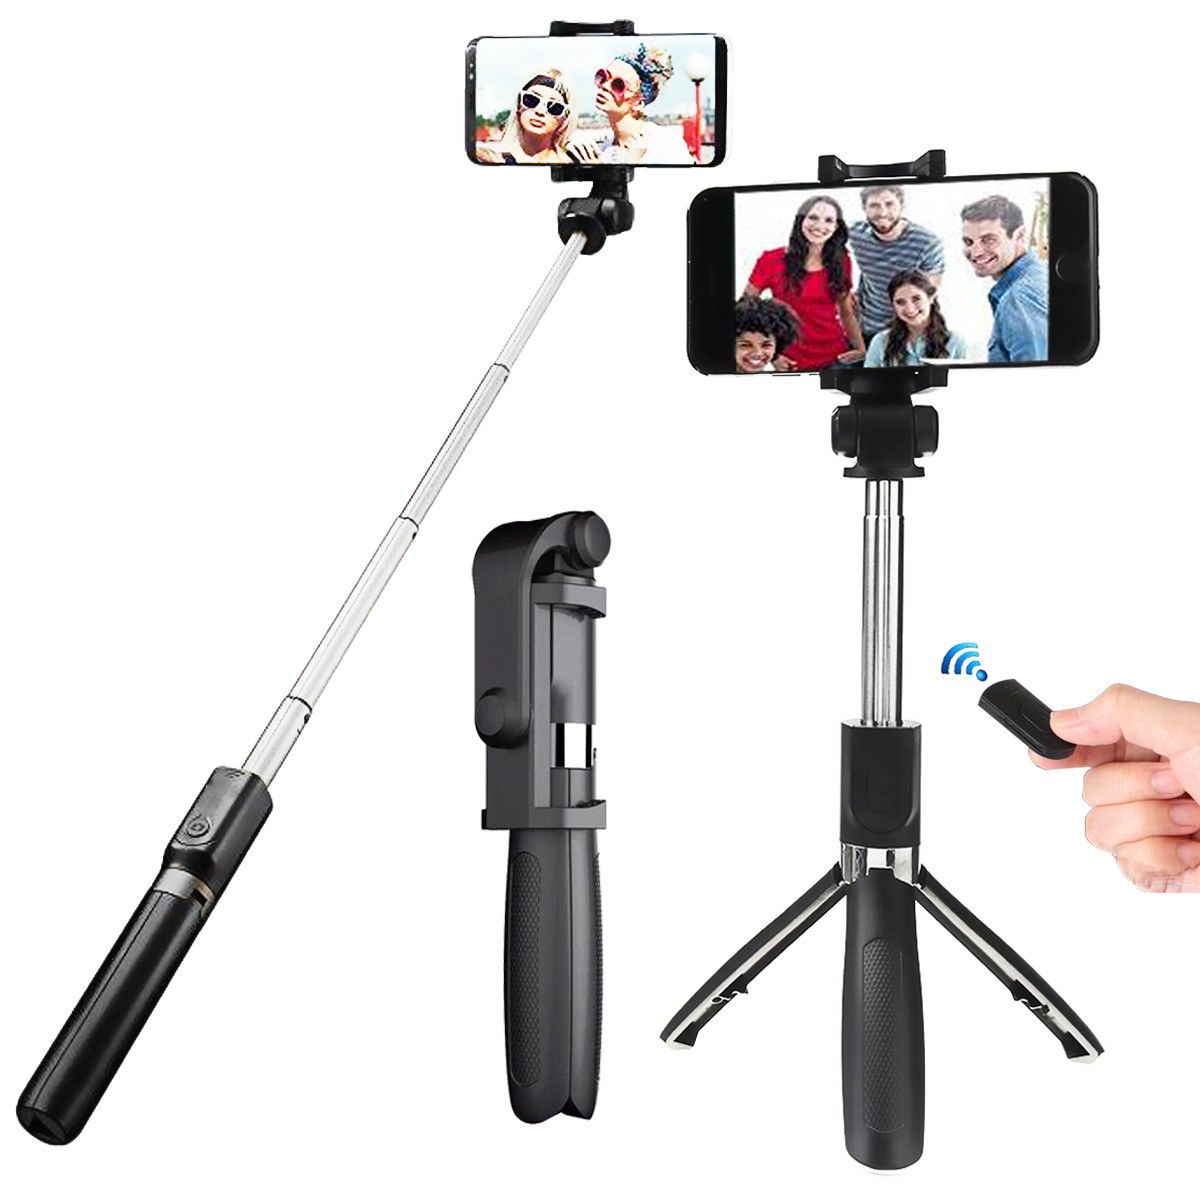 2019 Hot Selling L01 Contrôle de la télécommande sans fil Bluetooth Extensible Selfie Stick Tripod Monopod Stand for 3.5-6.2 "Inch Smartphones